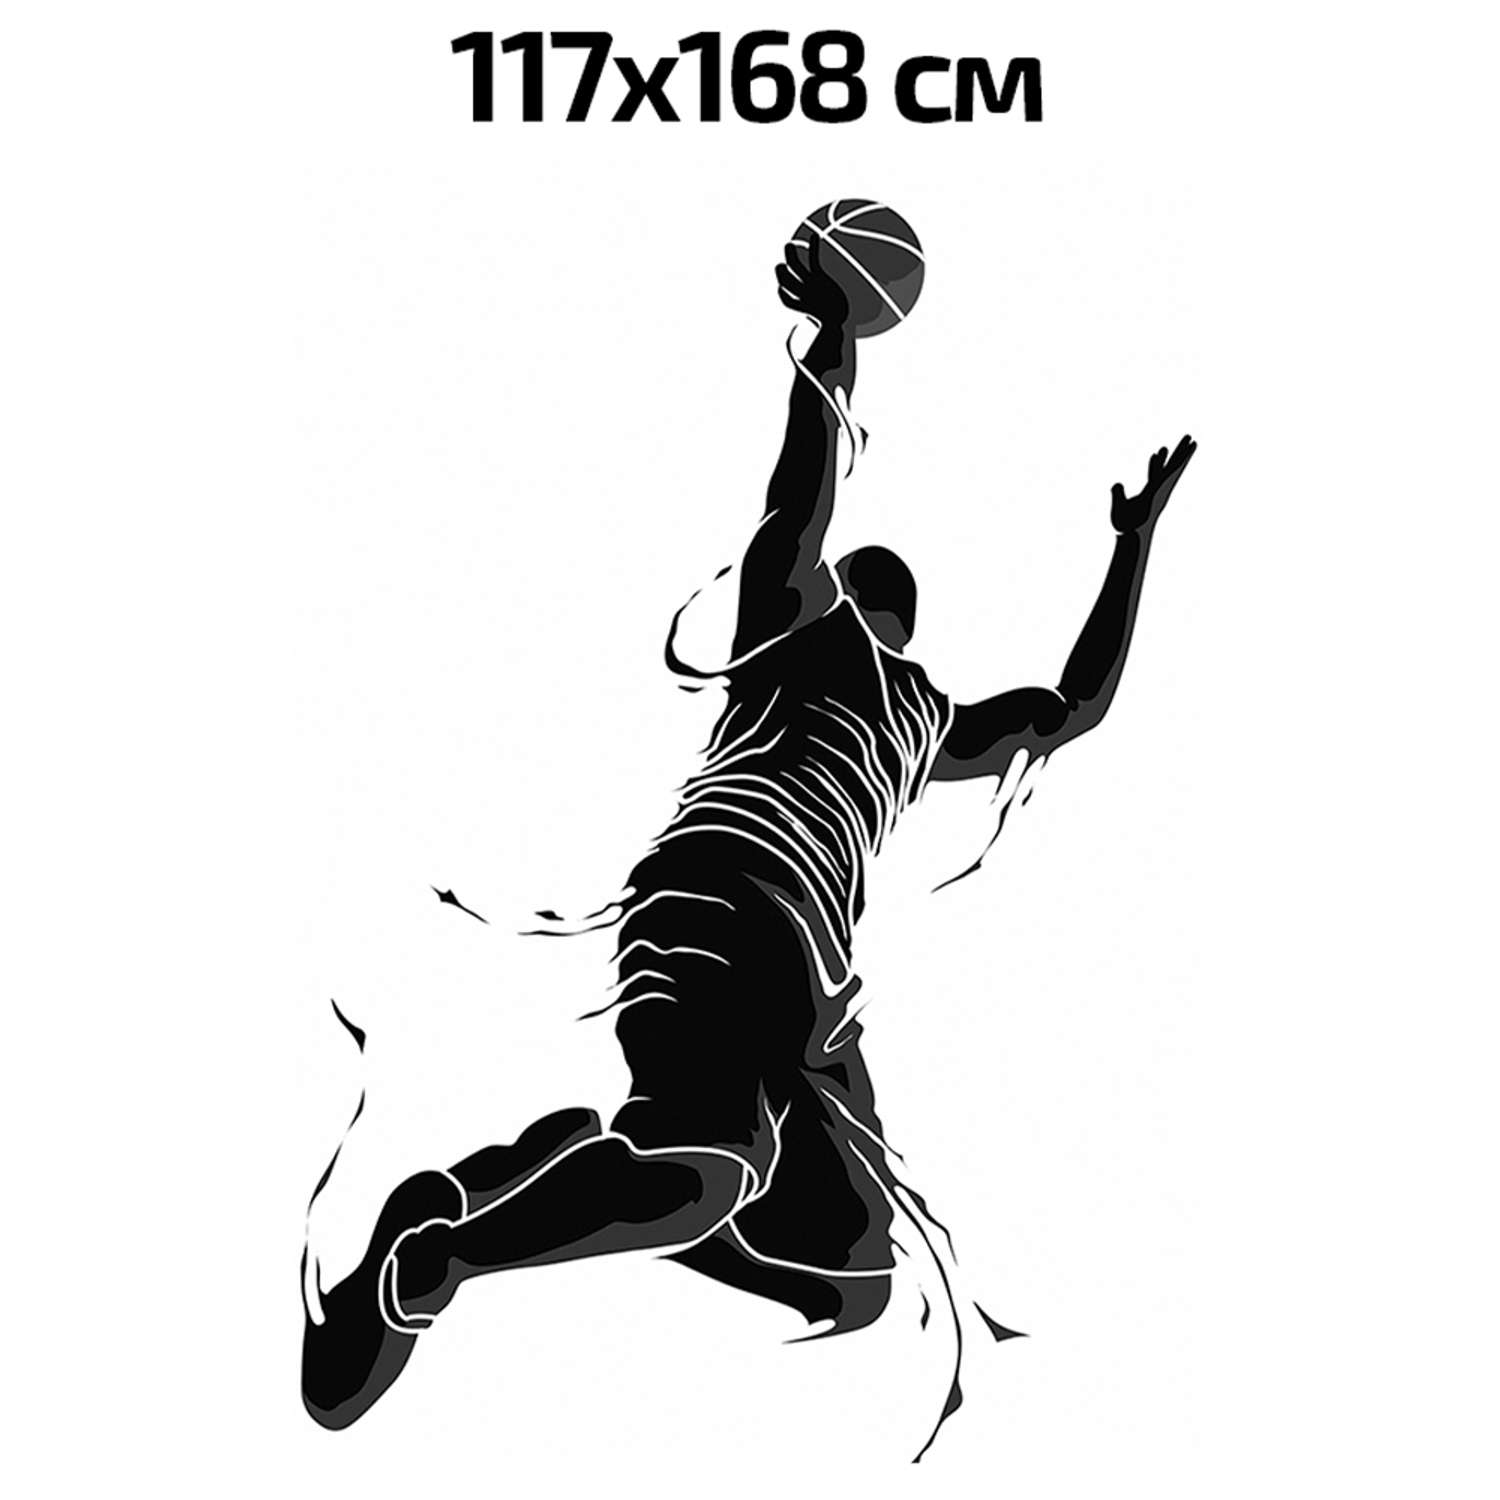 Наклейка интерьерная Woozzee Баскетболист в броске - фото 2